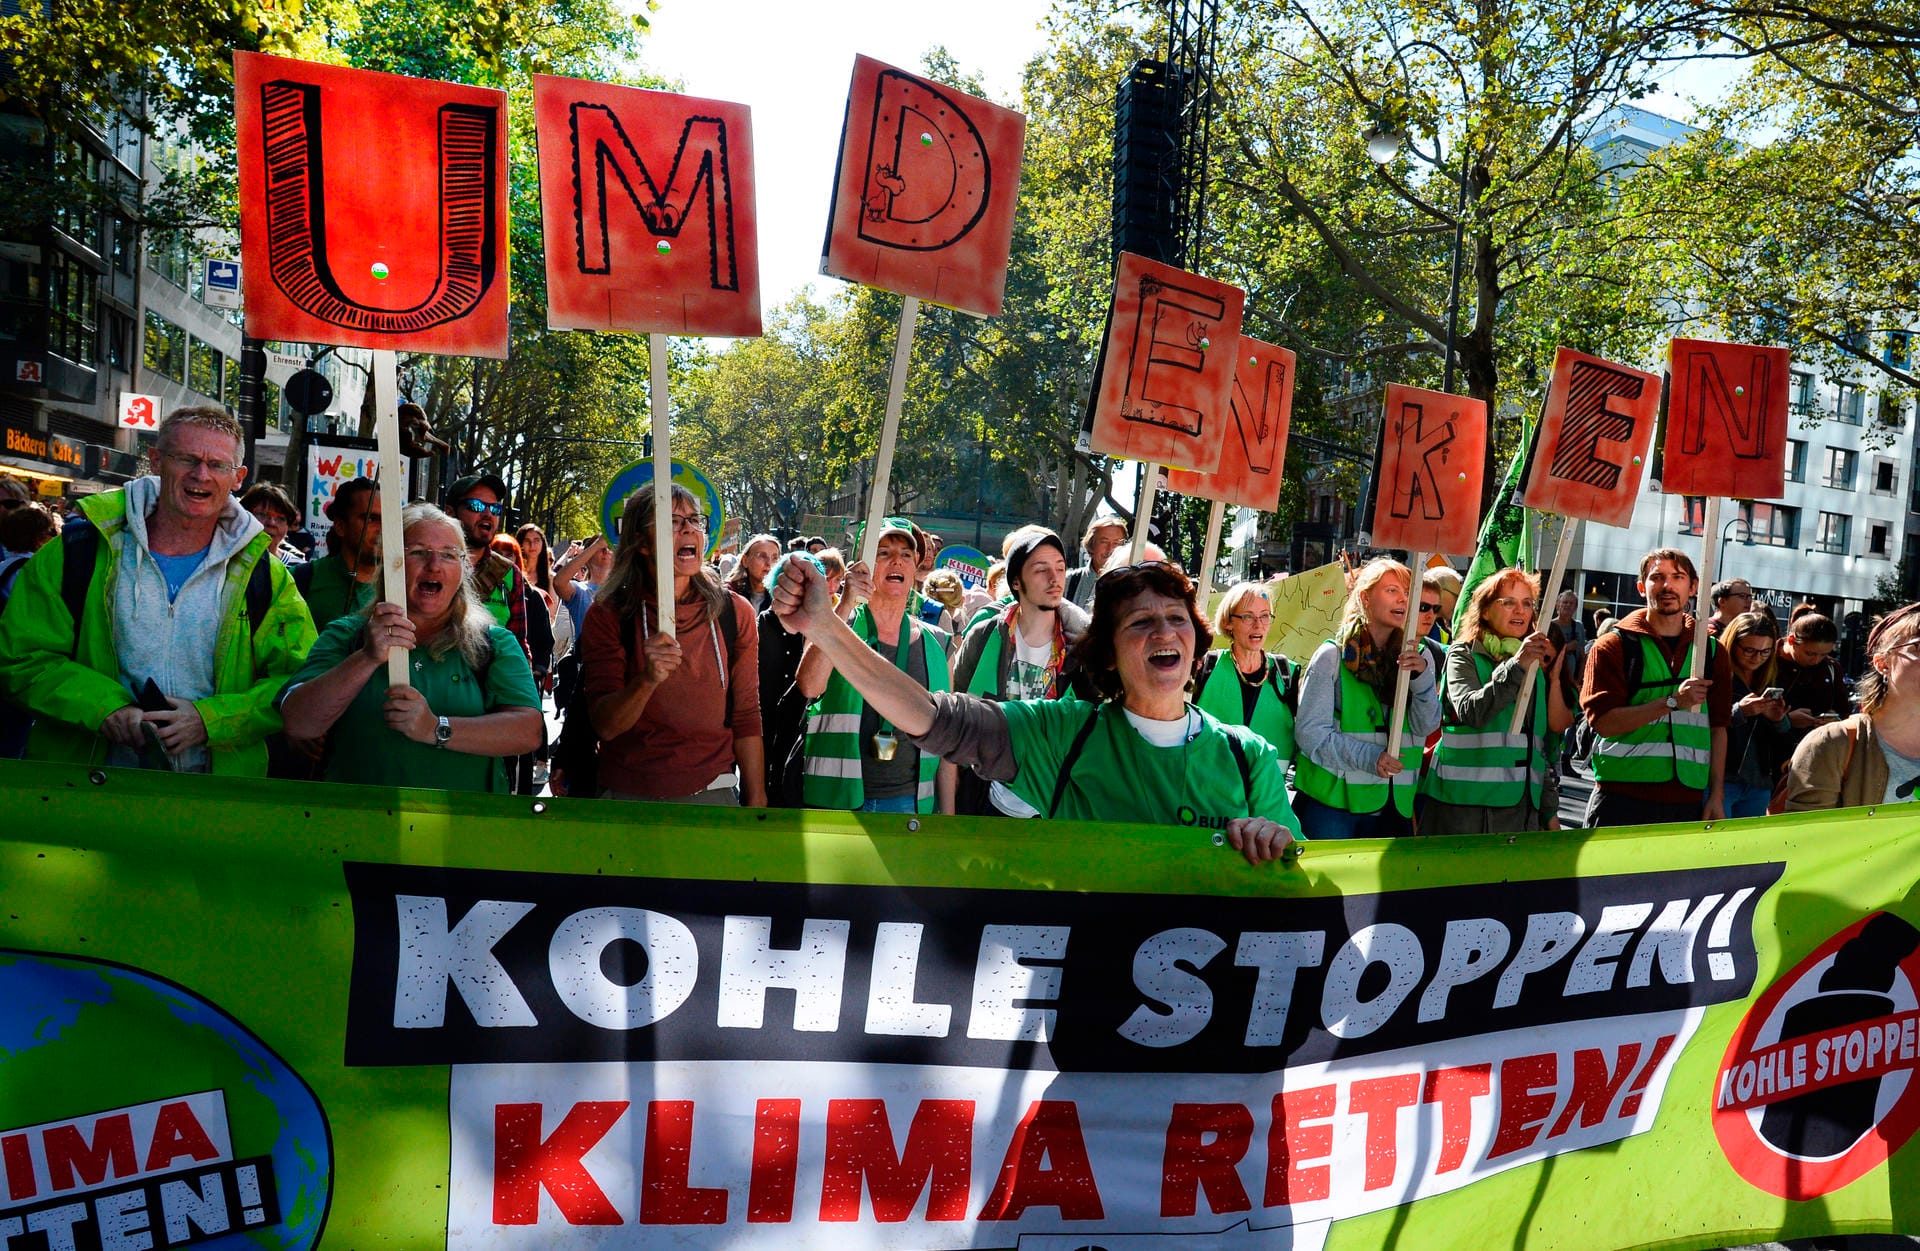 Jugendliche demonstrieren in Köln mit einem Banner "Kohle stoppen Klima retten!".